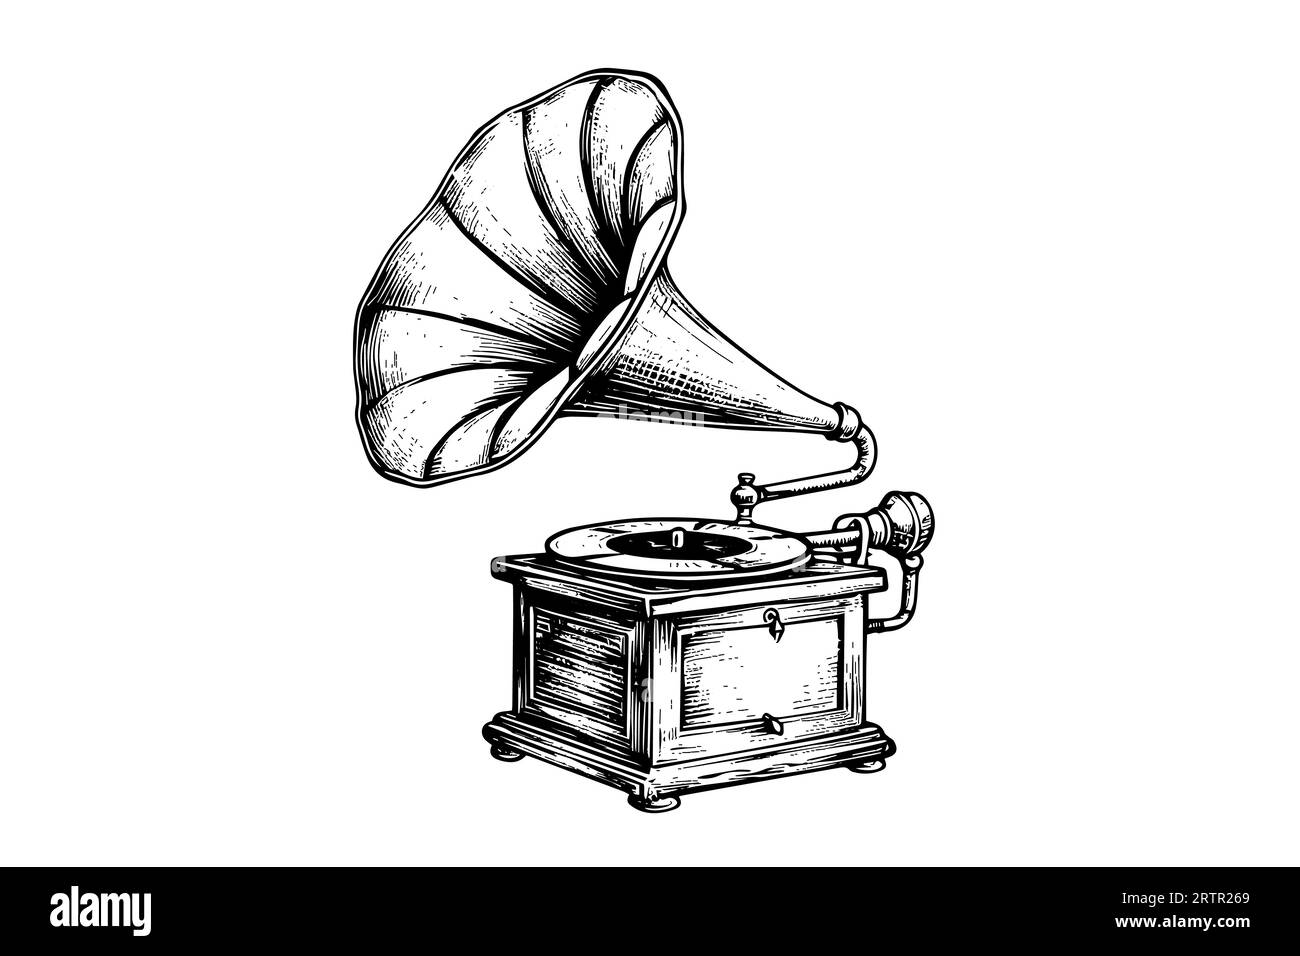 Rétro phonographe gramophone vintage illustration vectorielle gravée. Esquissez des dessins dessinés à la main Illustration de Vecteur